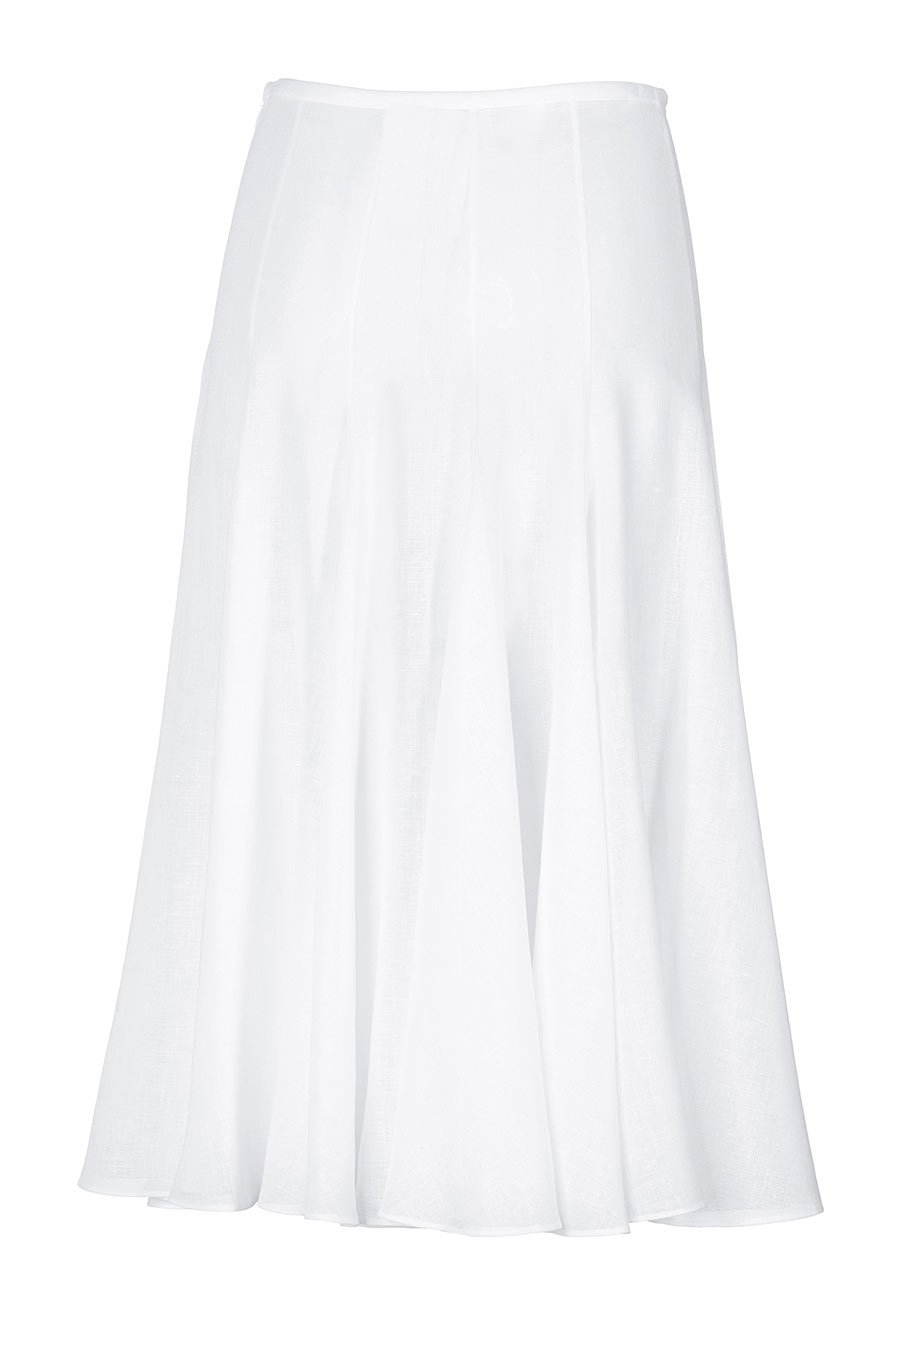 White Plus Size Skirt 102